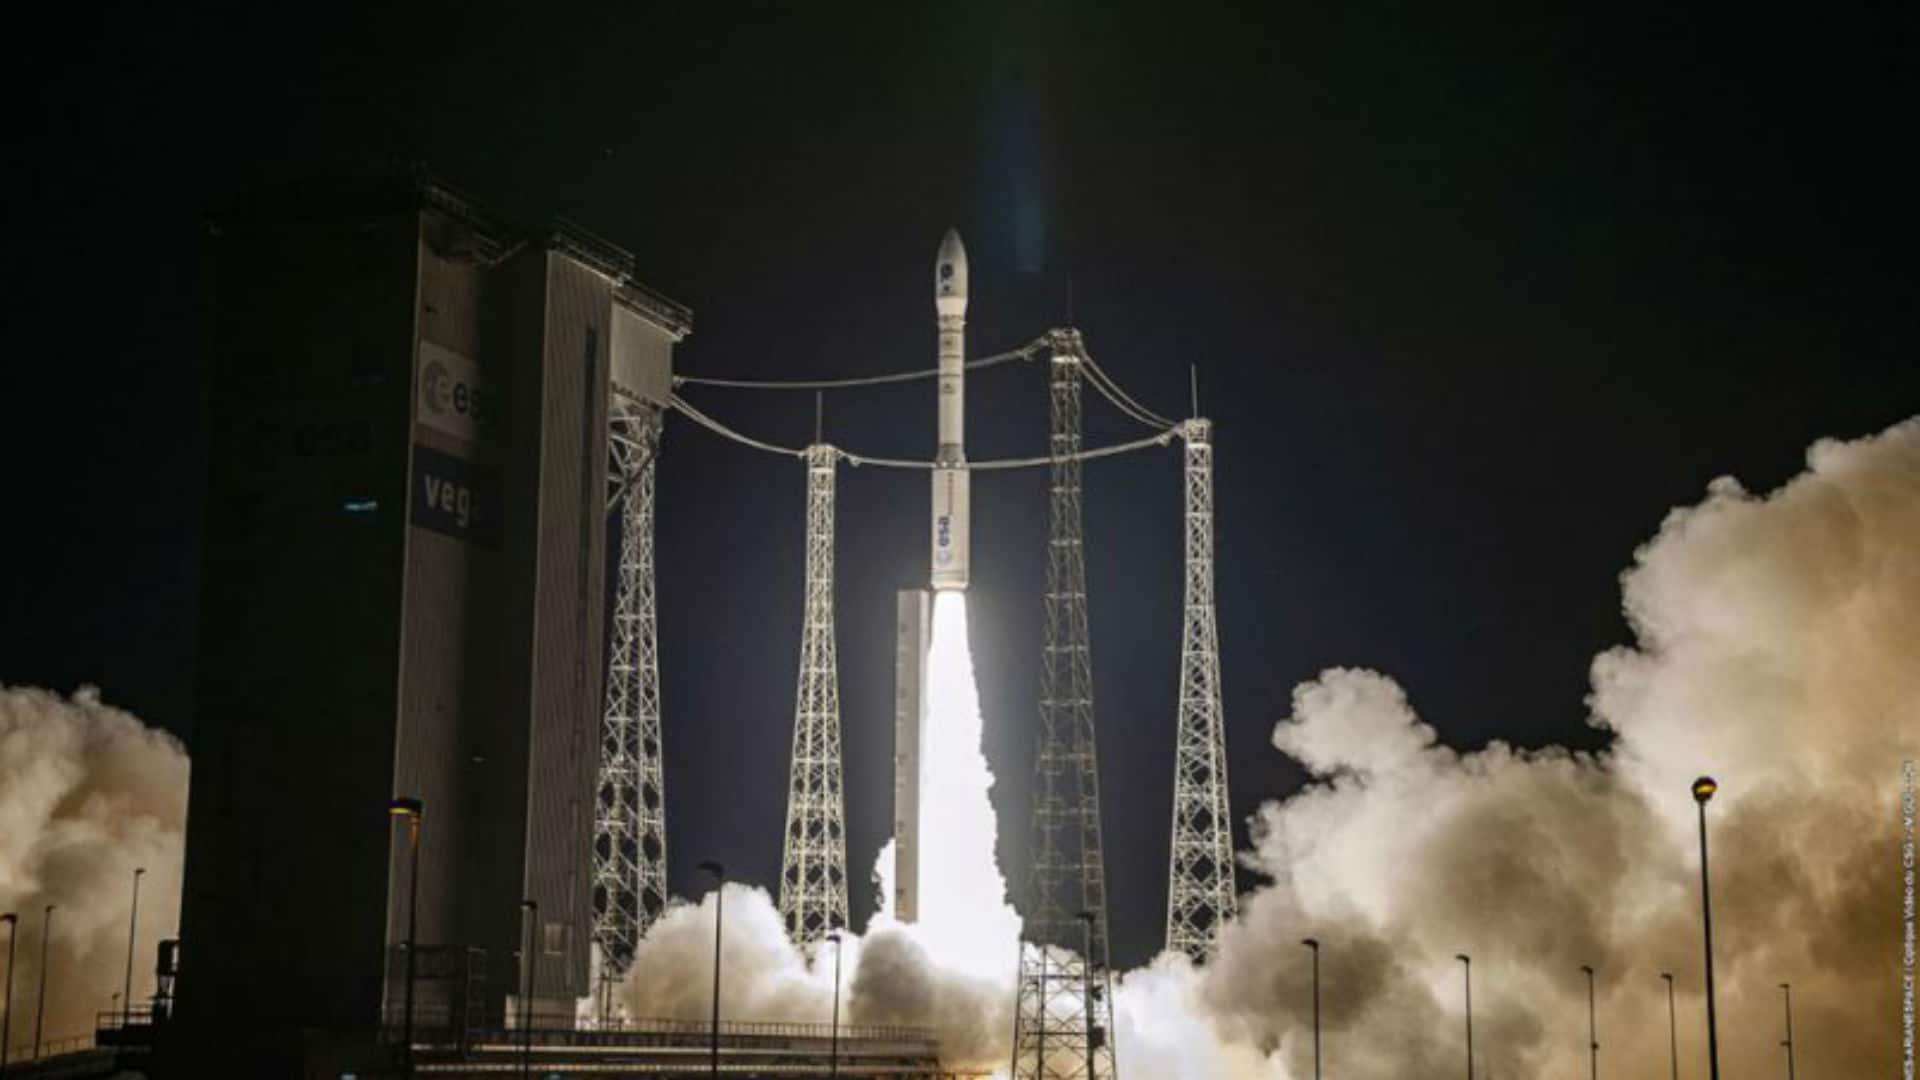 El 17 de noviembre, el lanzamiento de un cohete Vega con el satélite español SEOSAT-Ingenio resultó en fracaso. Tras la investigación, se determinó que los cables del sistema de control vectorial de empuje (TVC) de la cuarta etapa estaban conectados al revés. [Arianespace]